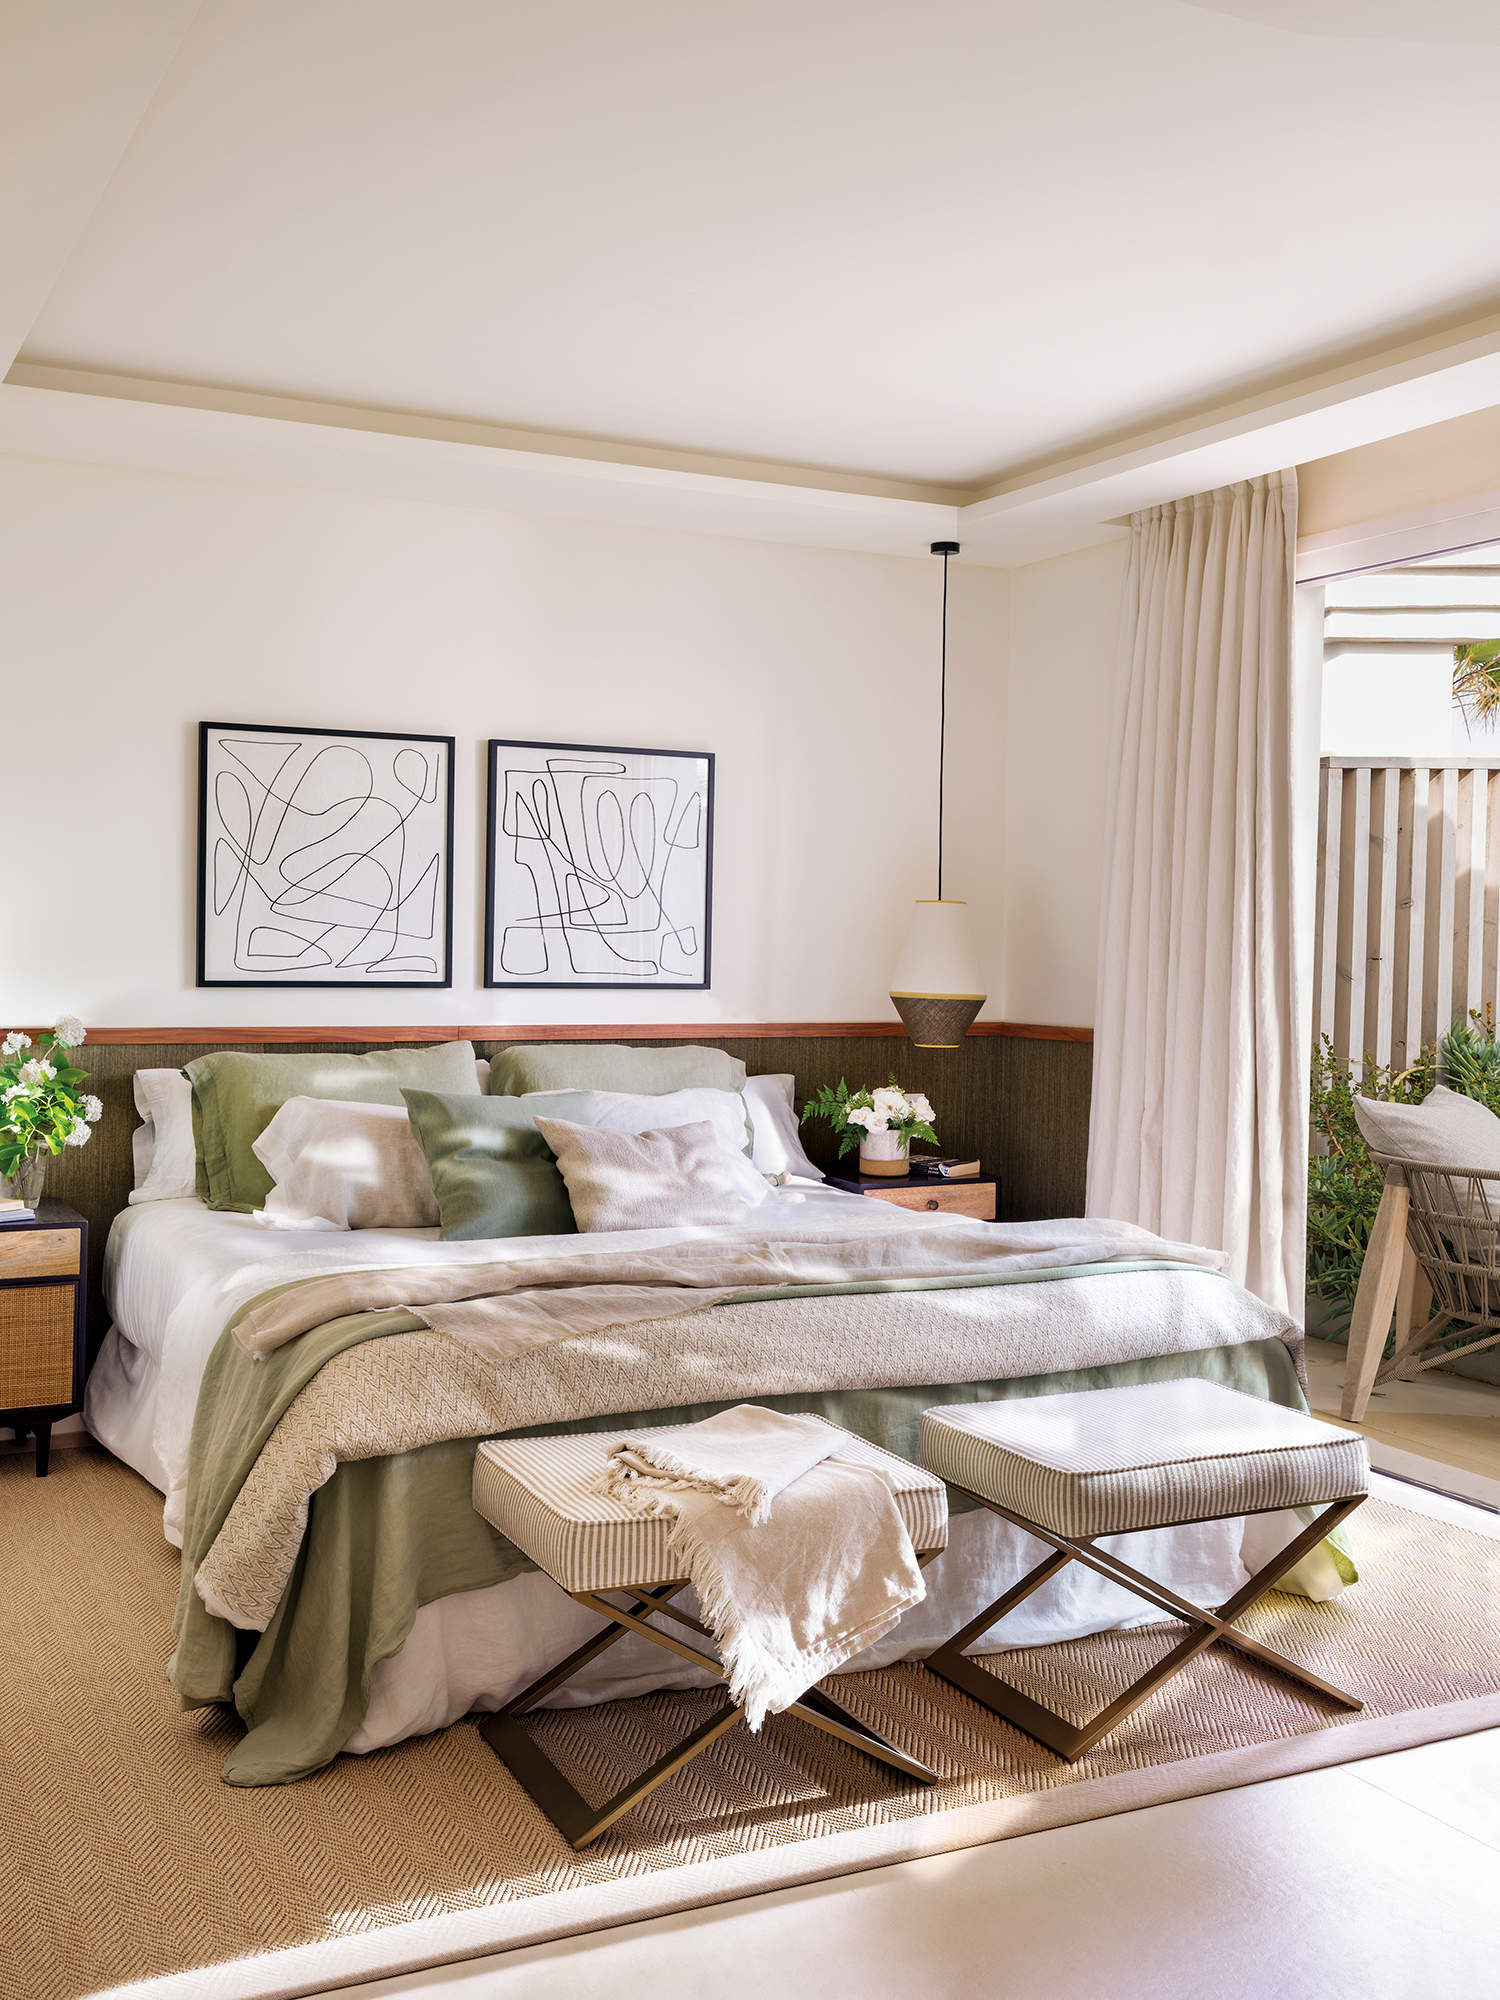 Dormitorio elegante decorado en tonos verdes.